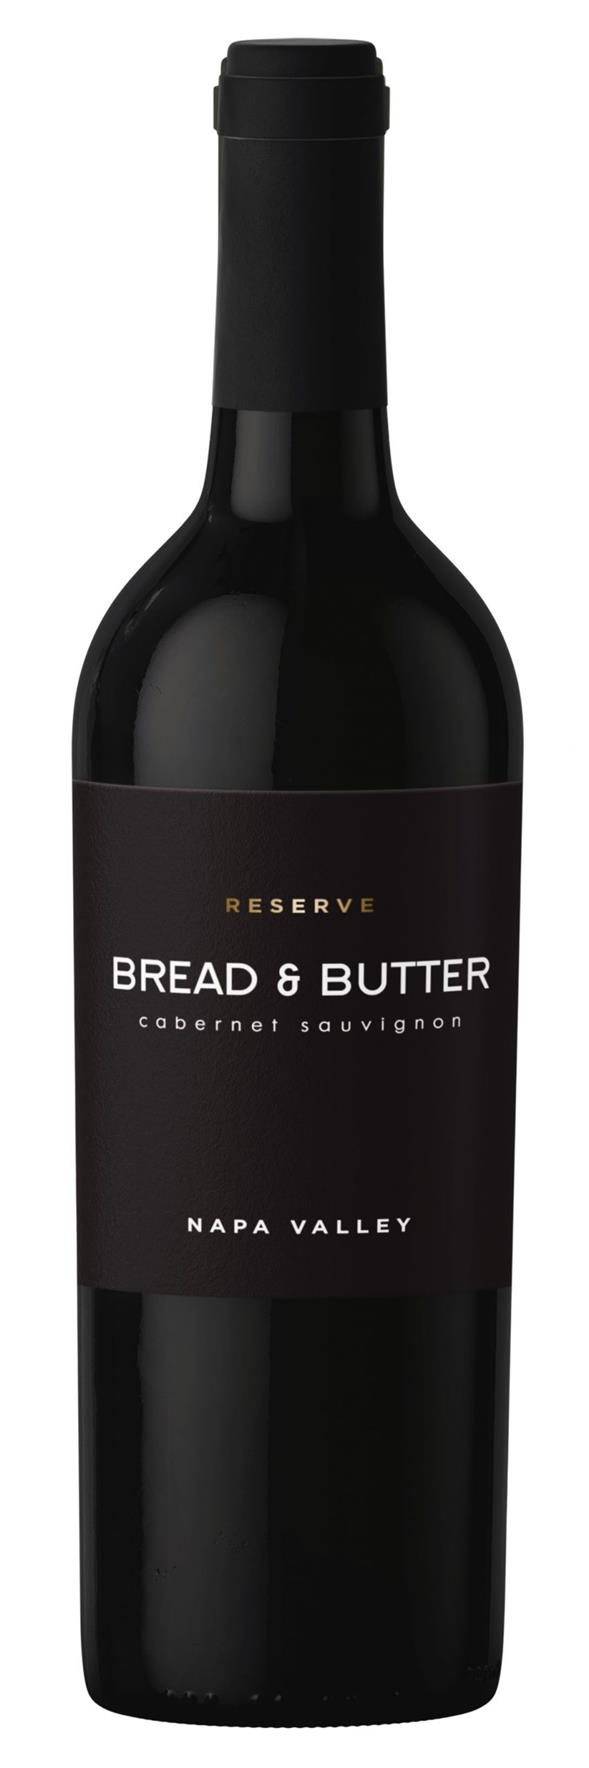 Bread & Butter – Cabernet Sauvignon Reserve 2018